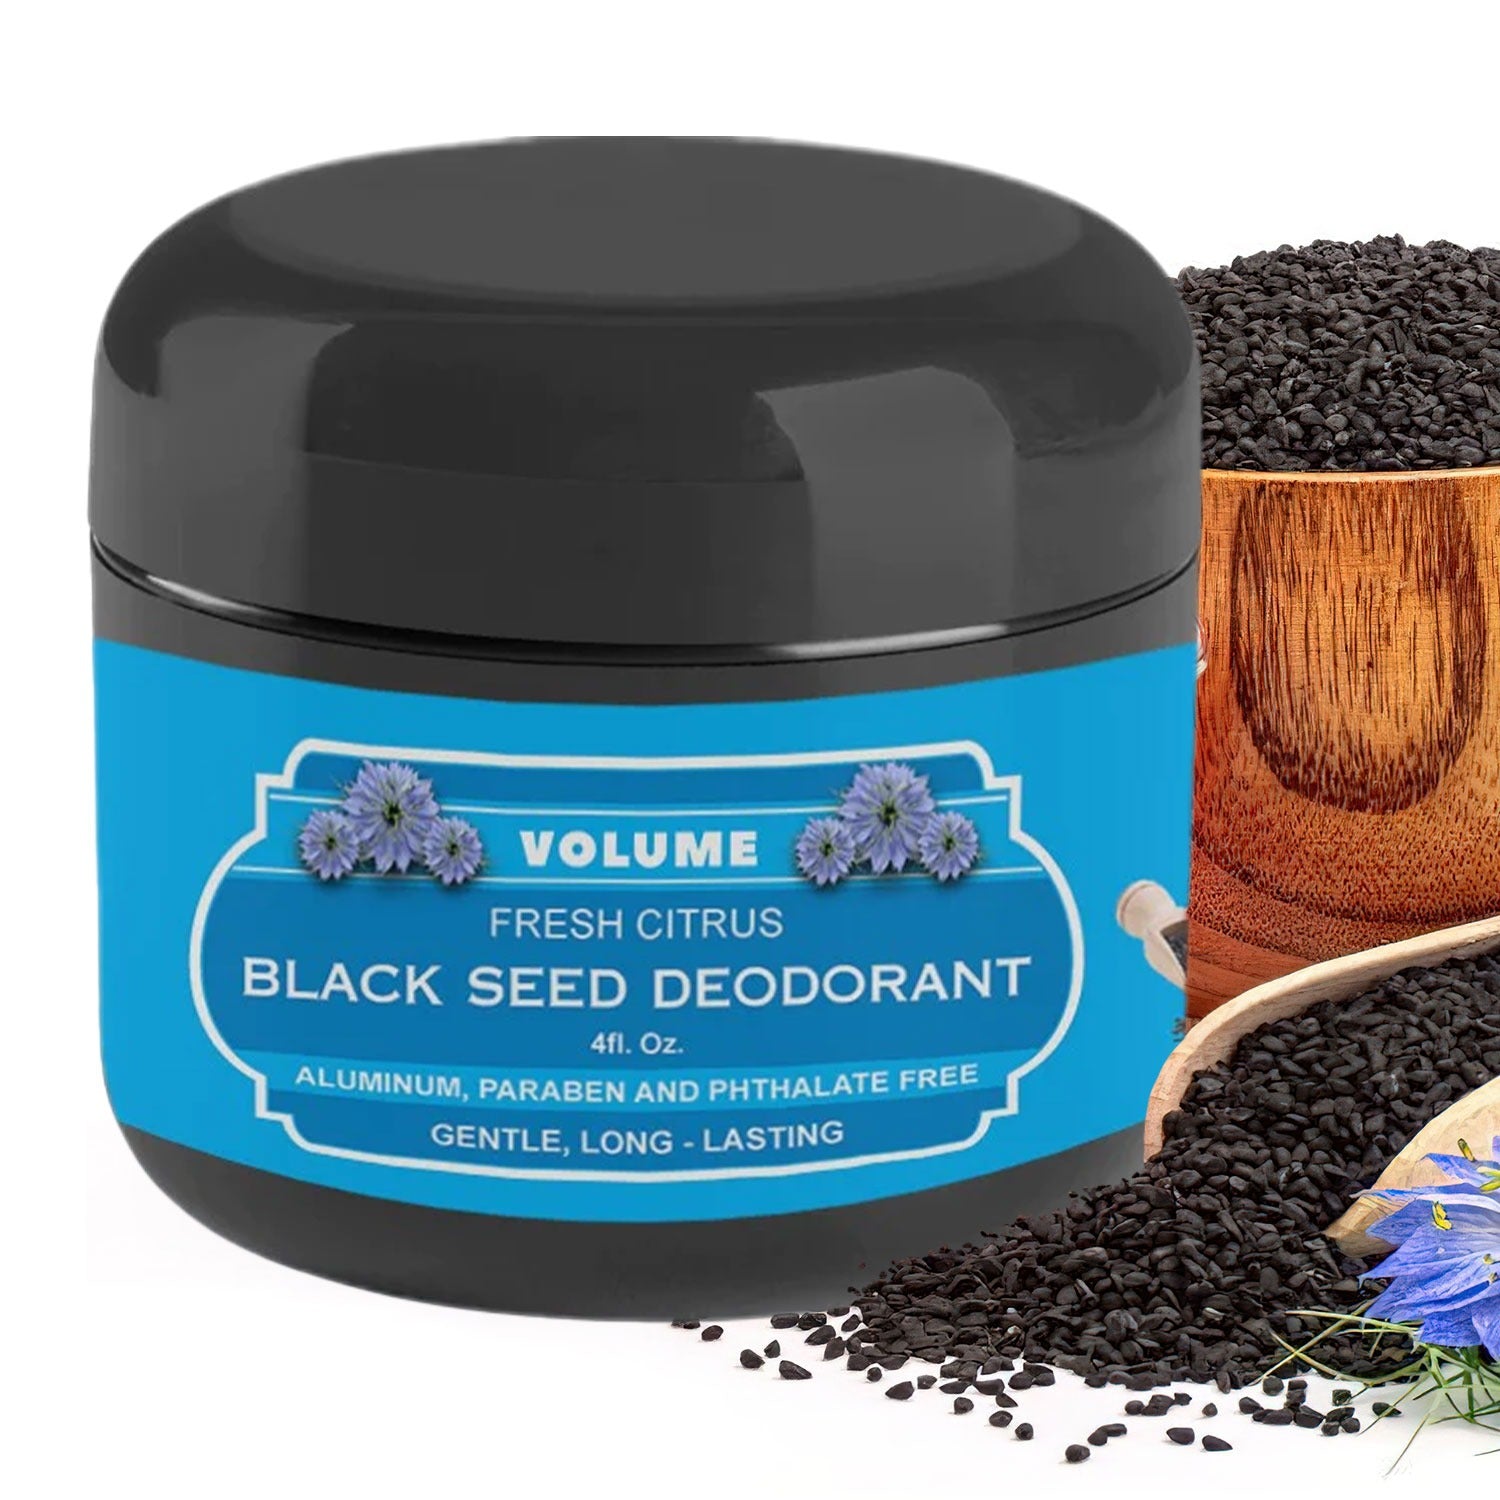 Black Seed Deodorant (4 oz) - Volume